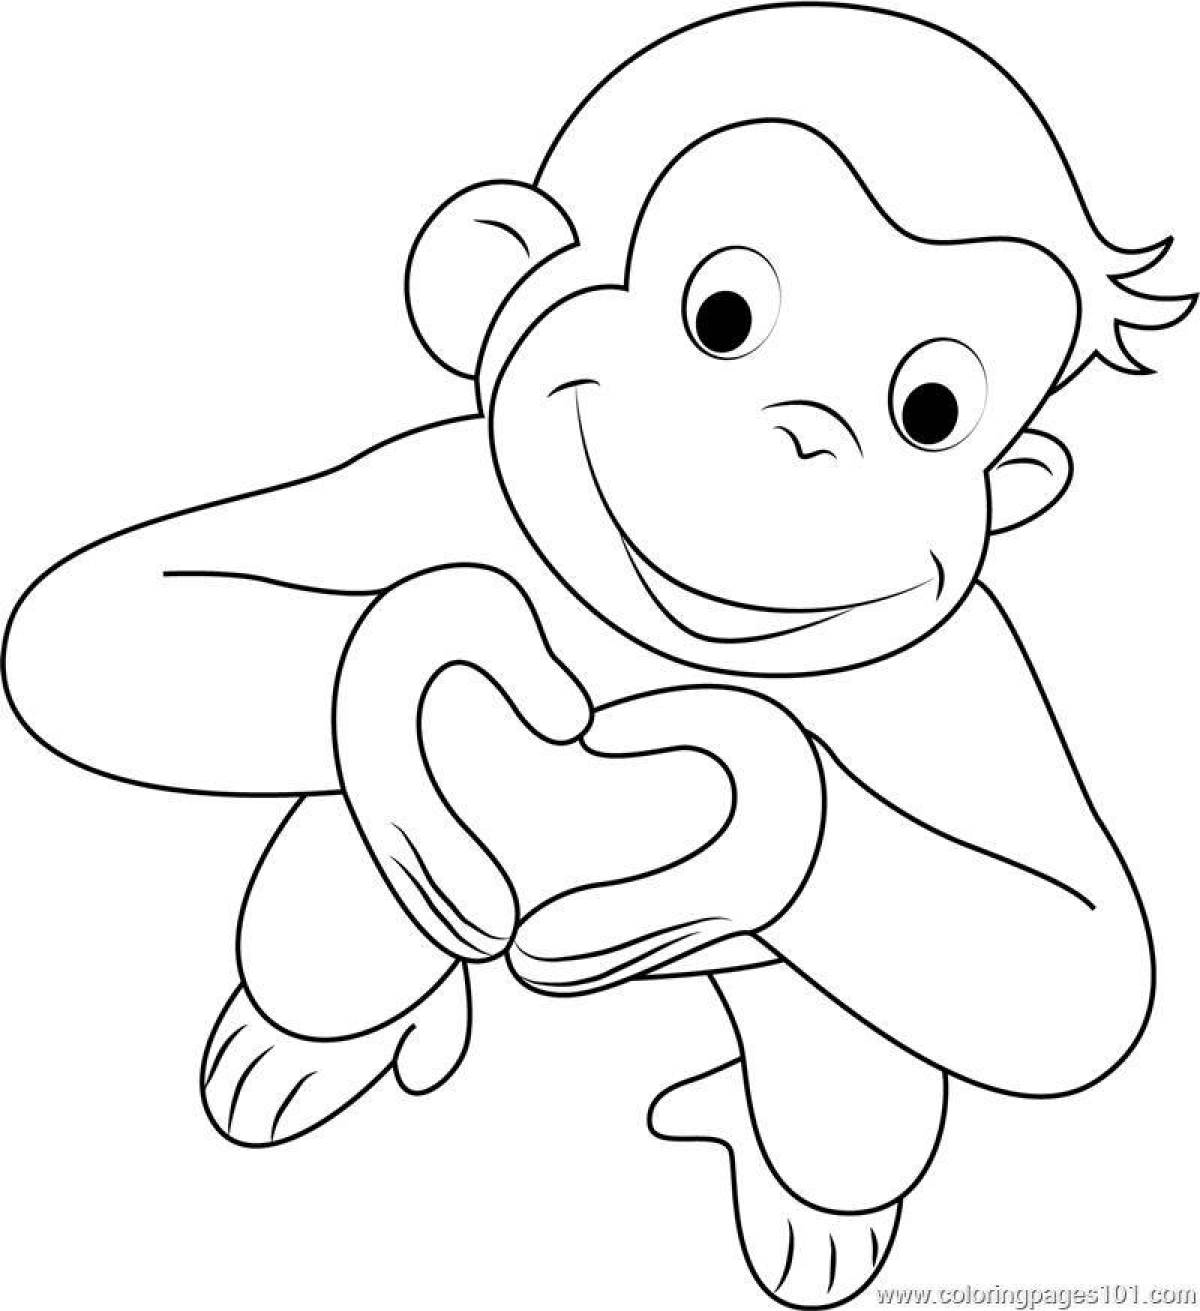 Милая раскраска обезьяна для детей